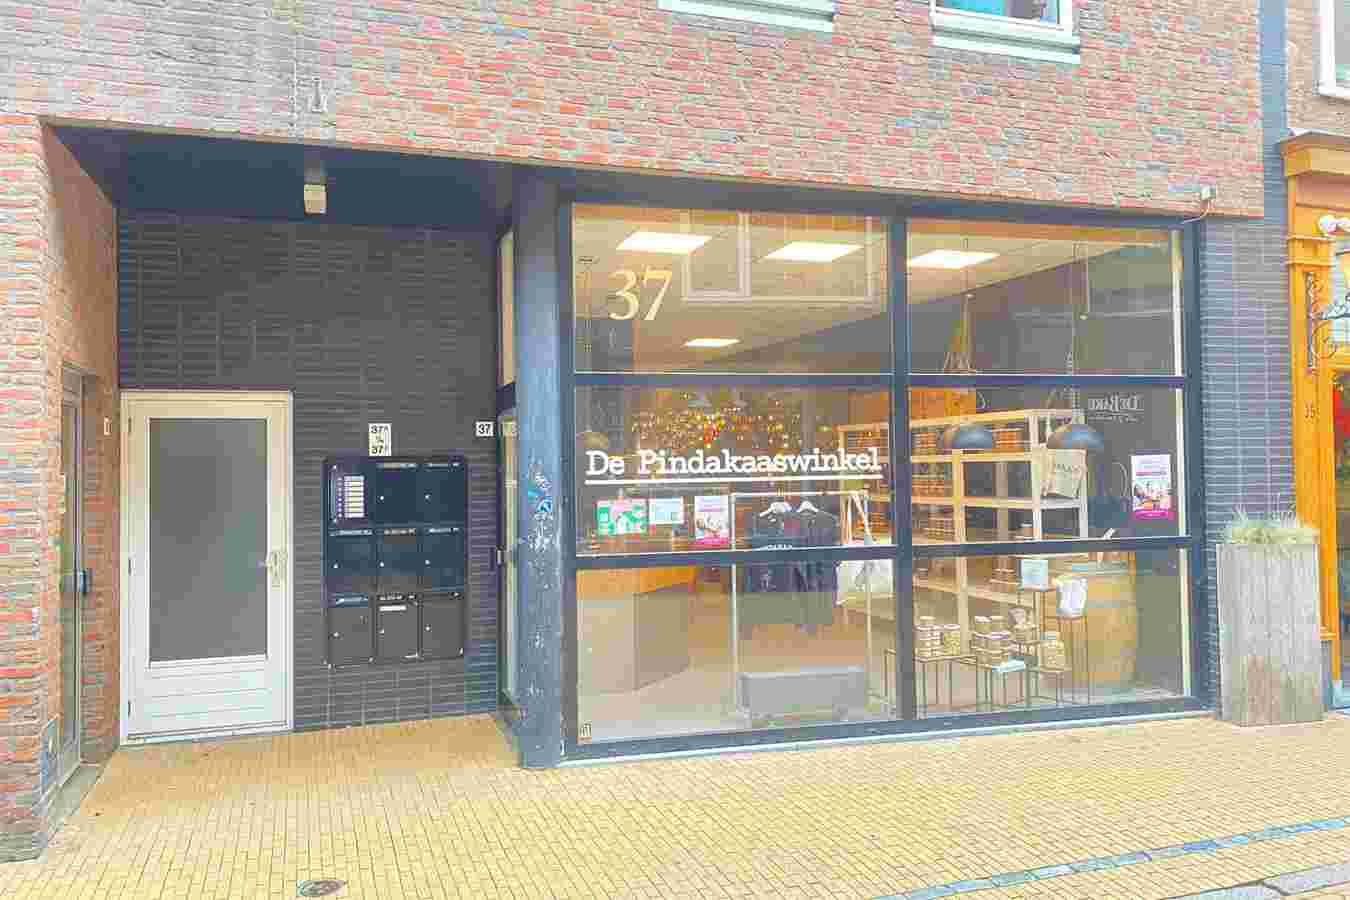 Folkingestraat 37